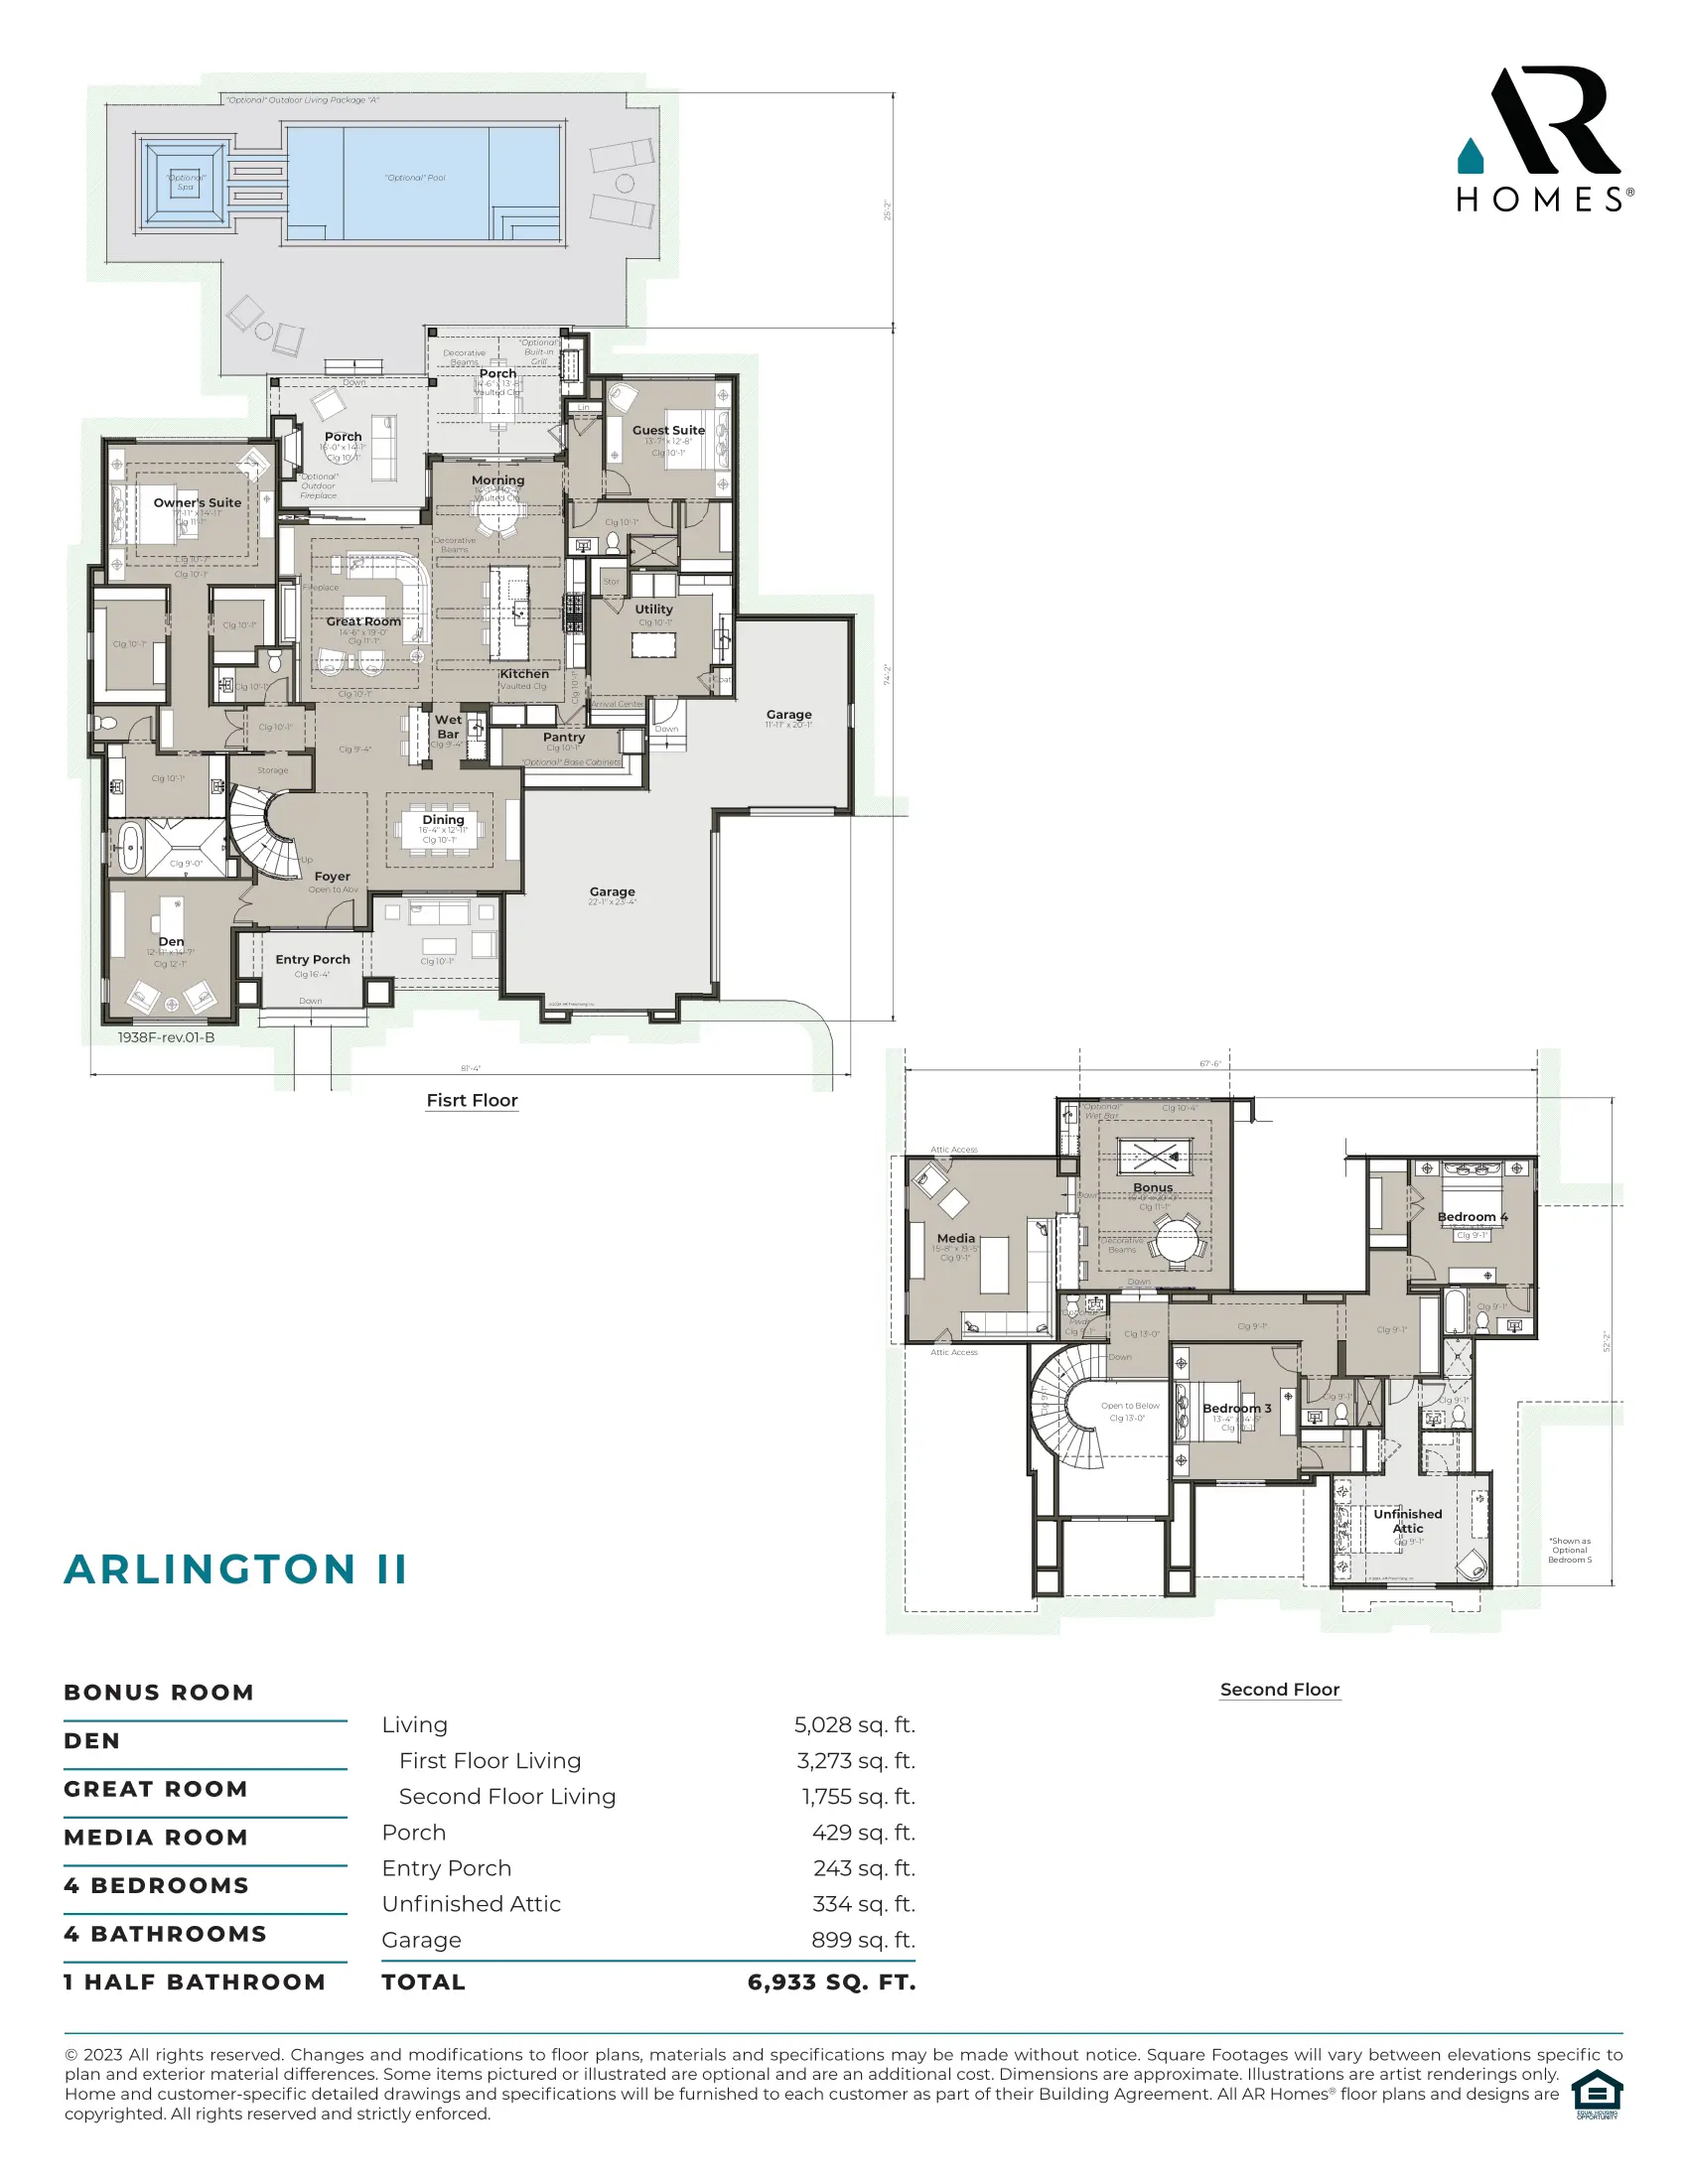 Arlington II Floor Plan and Spec